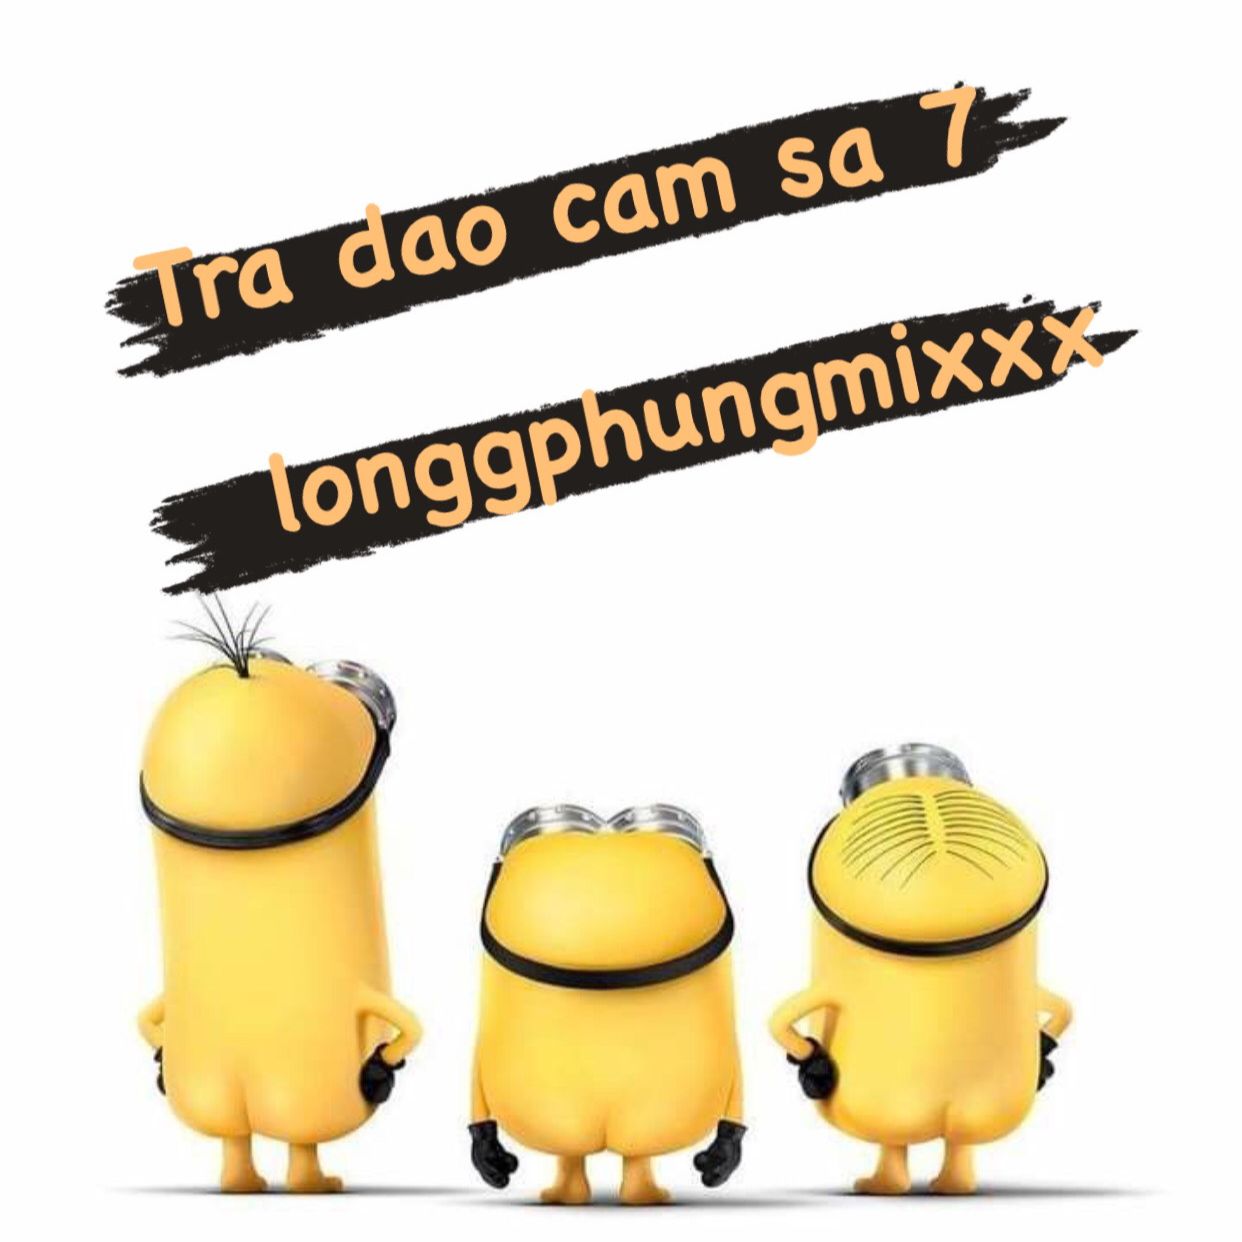 אראפקאפיע Tra Dao Cam Sa 7 - 132 longgphungmixxx